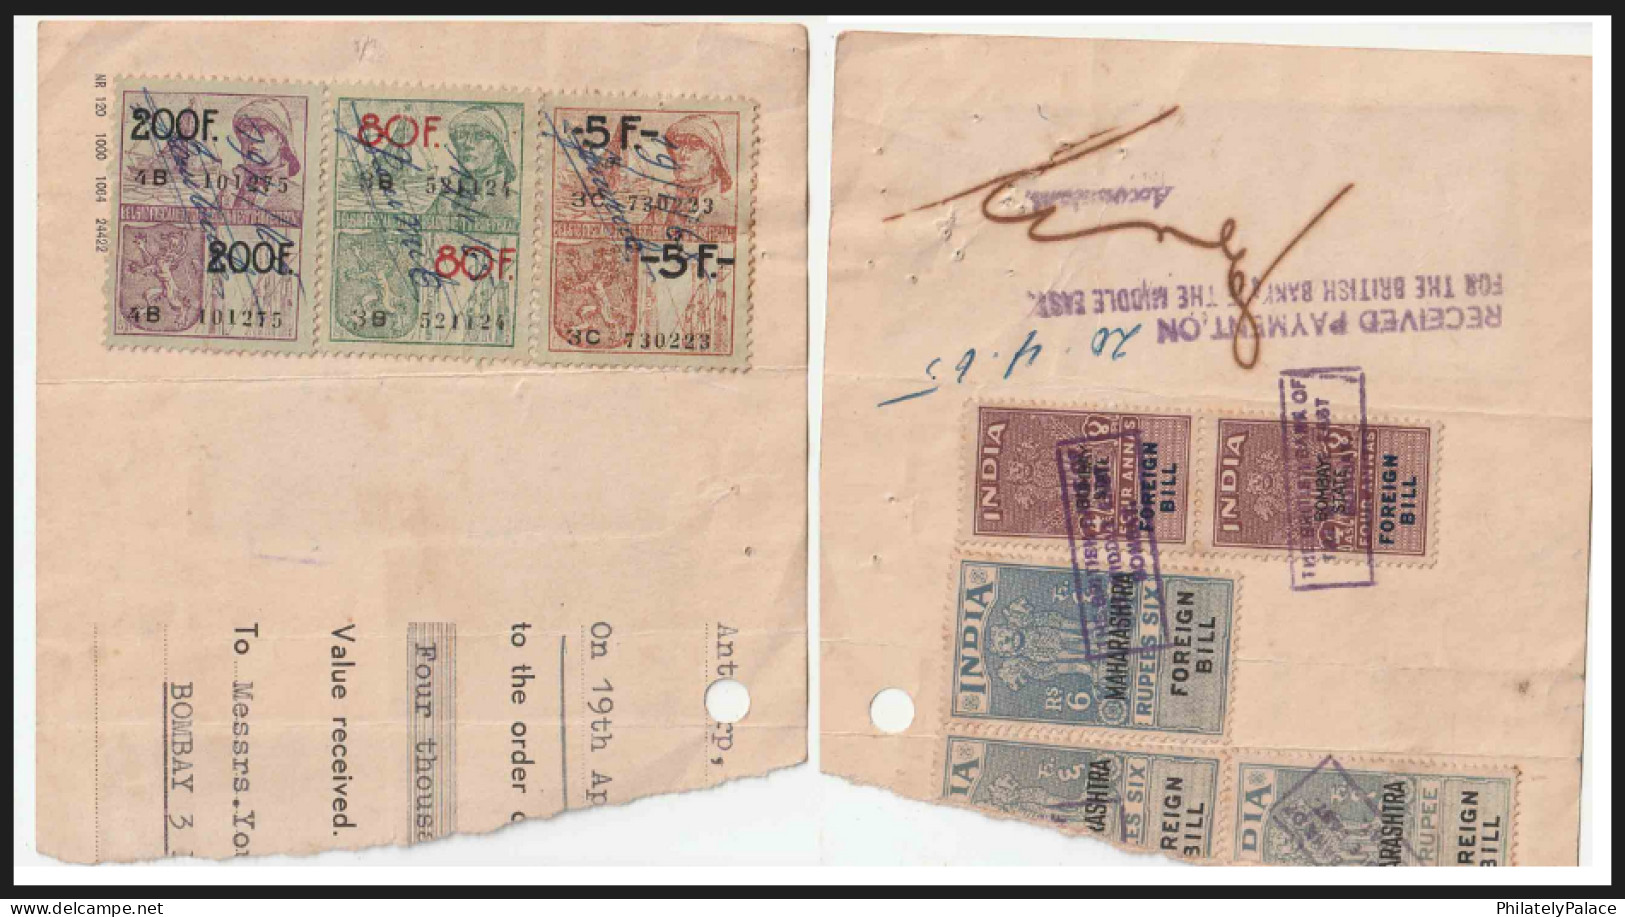 BELGIUM INDIA 1965 Combination Revenue On Piece (3) FOREIGN BILLS Revenue,Overprinted Numbered'80'F'0" (**) Inde Indien - Bills Of Exchange